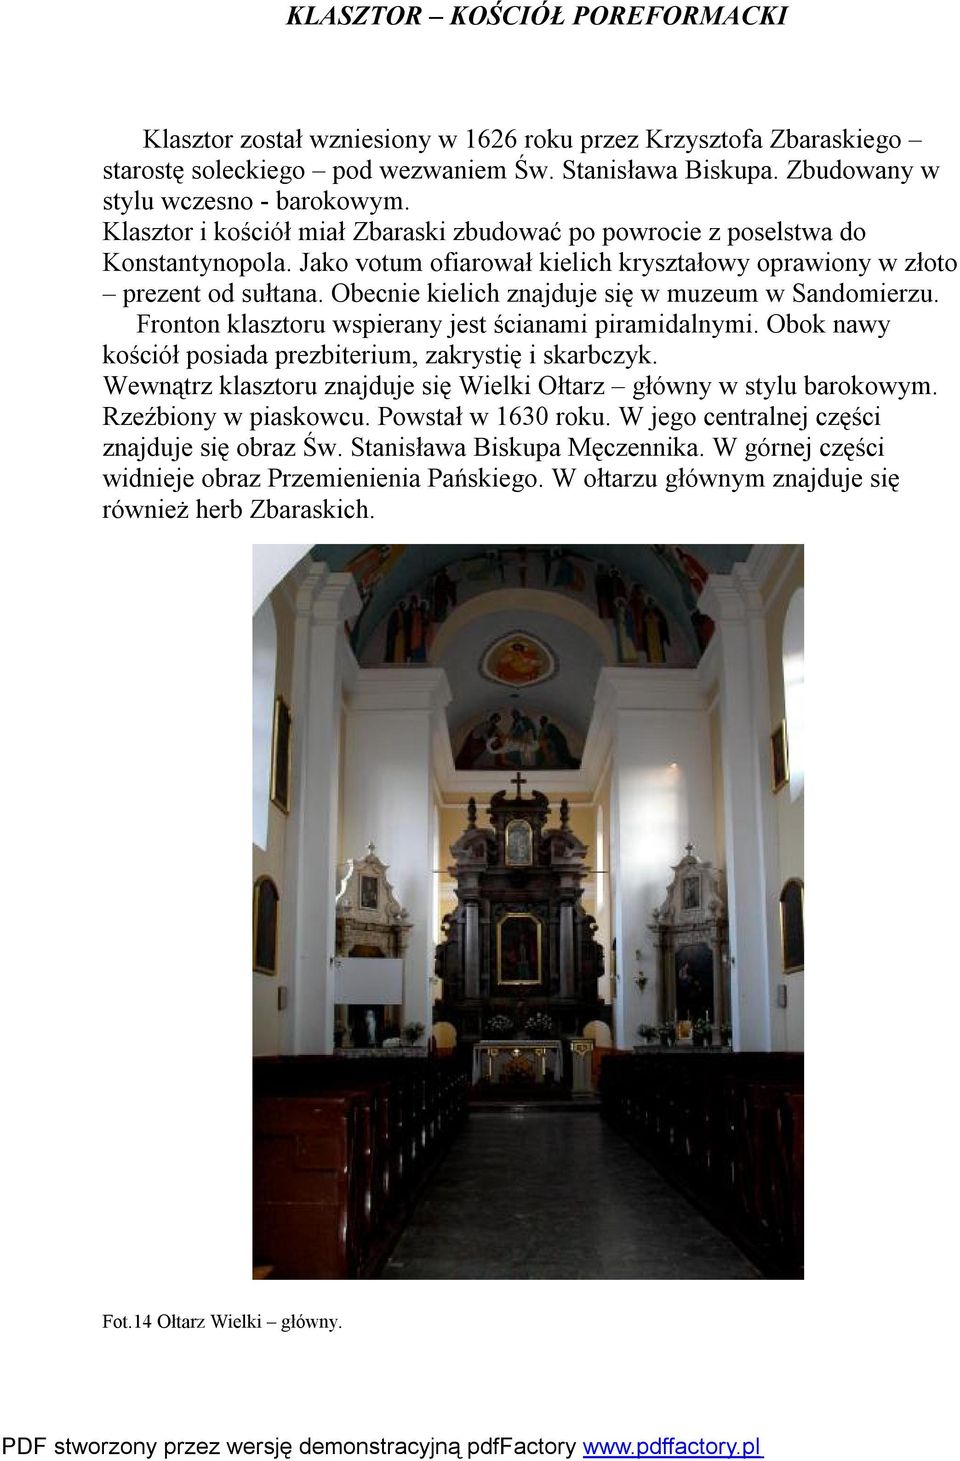 Obecnie kielich znajduje się w muzeum w Sandomierzu. Fronton klasztoru wspierany jest ścianami piramidalnymi. Obok nawy kościół posiada prezbiterium, zakrystię i skarbczyk.